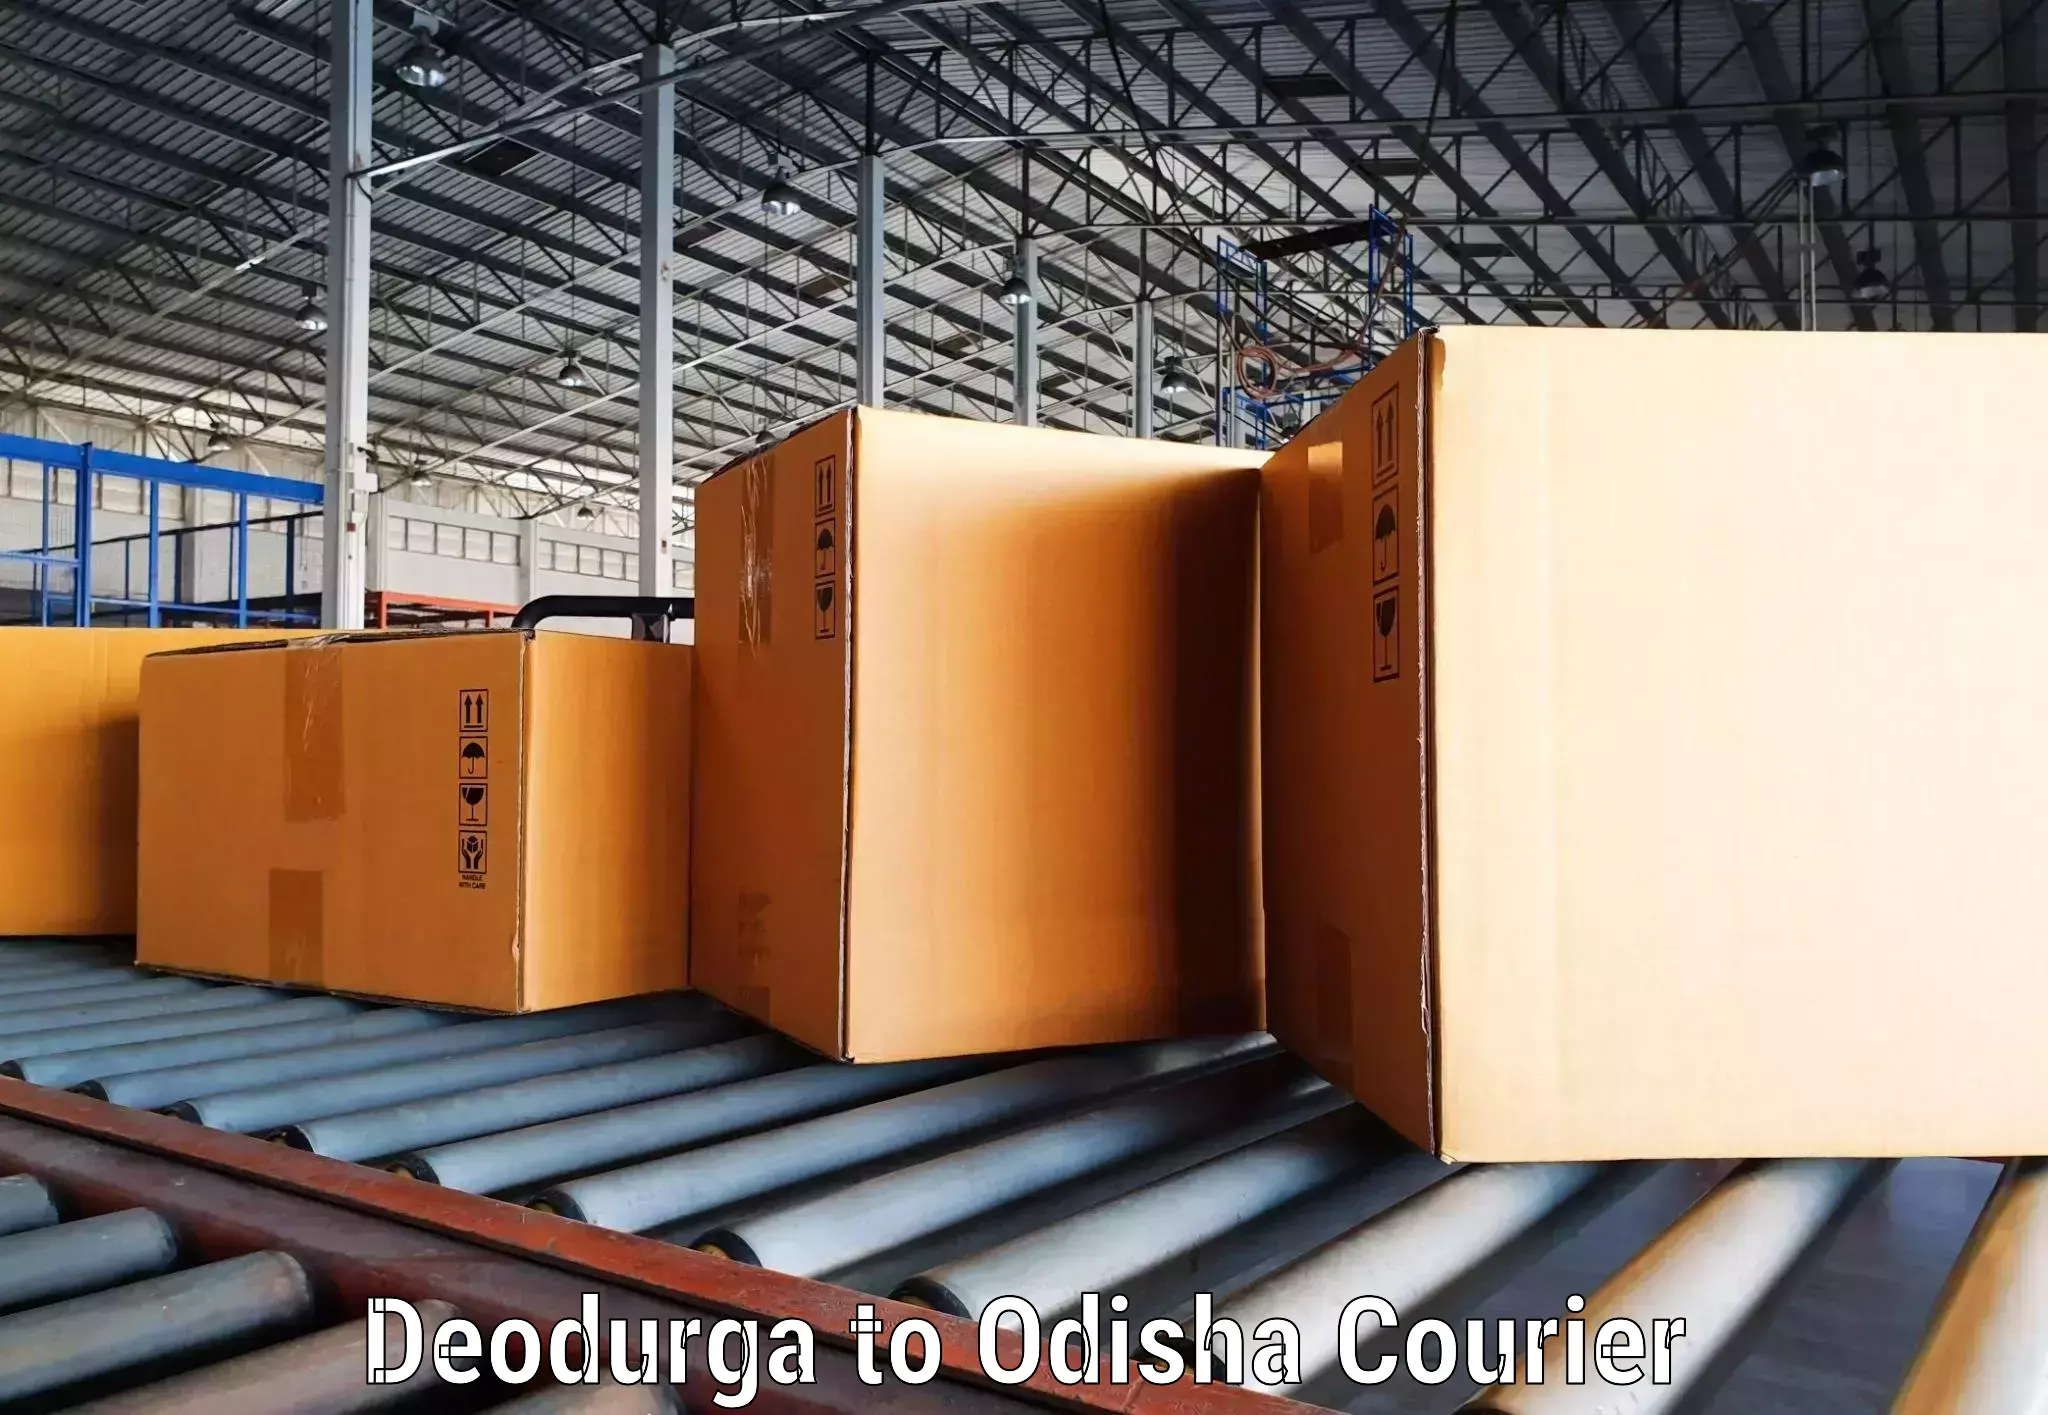 On-demand courier Deodurga to Tihidi